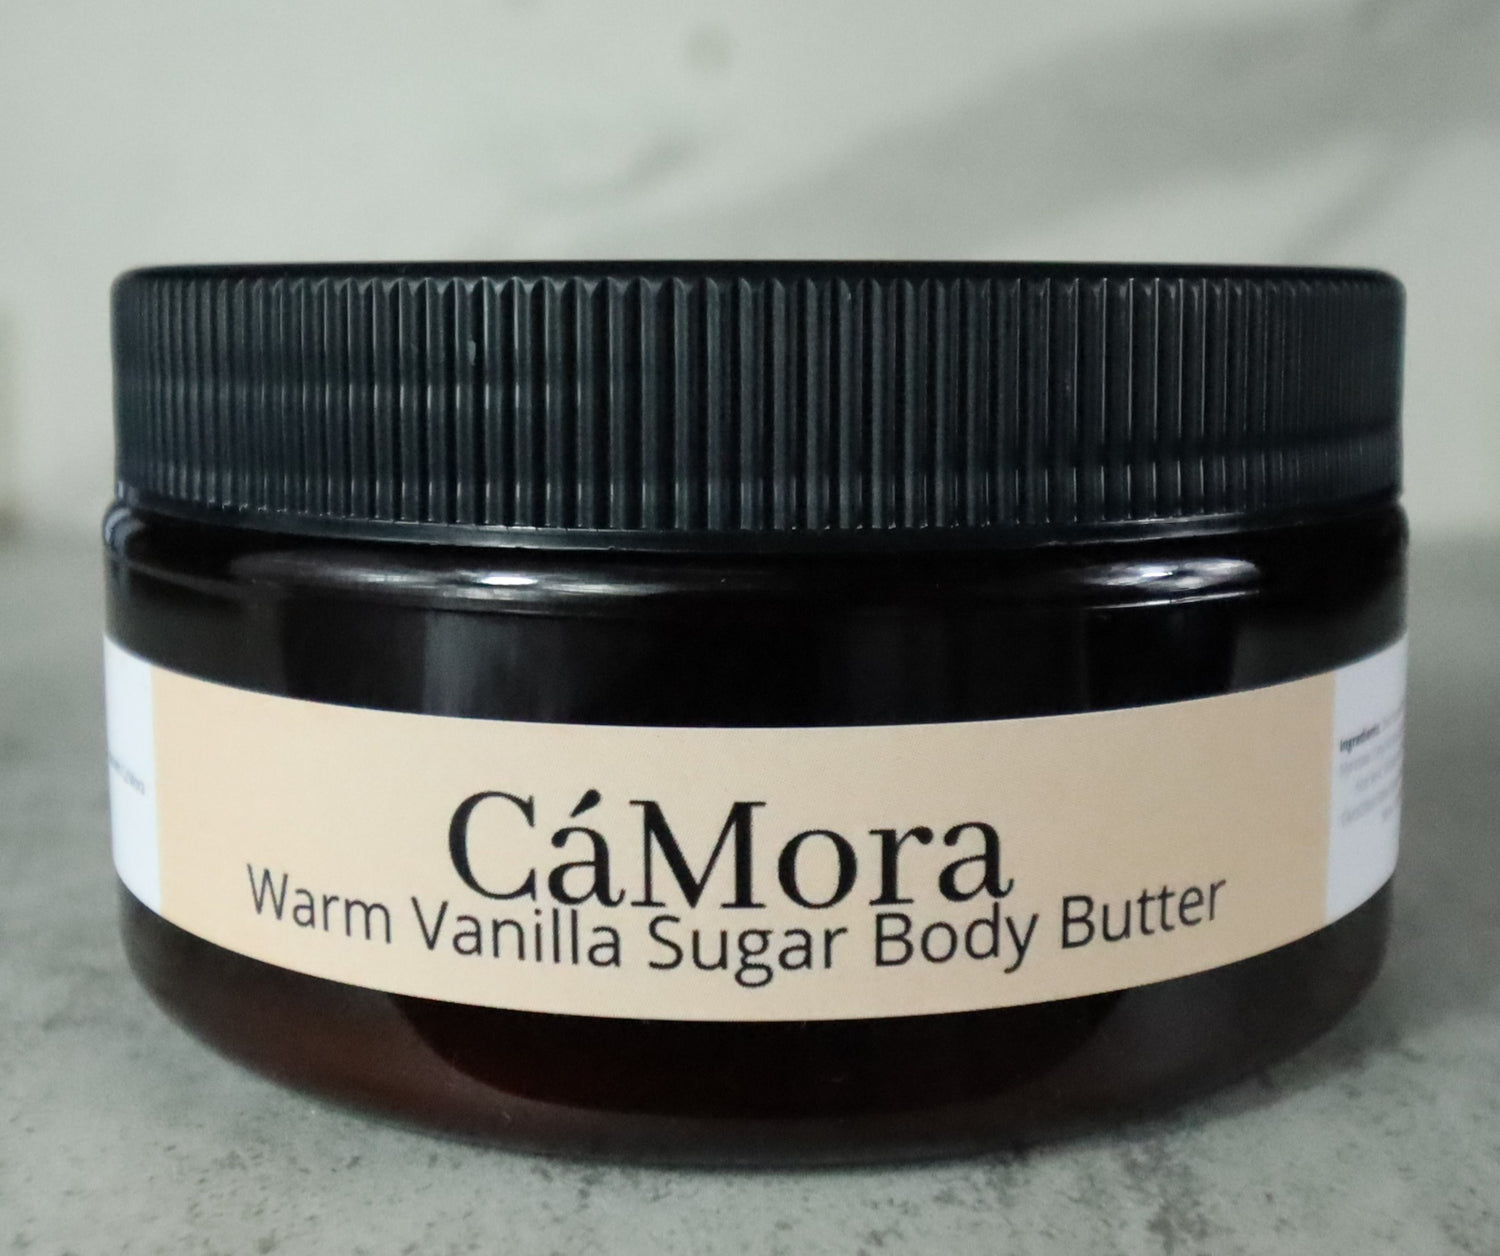 Warm Vanilla Sugar body butter for moisturized skin.